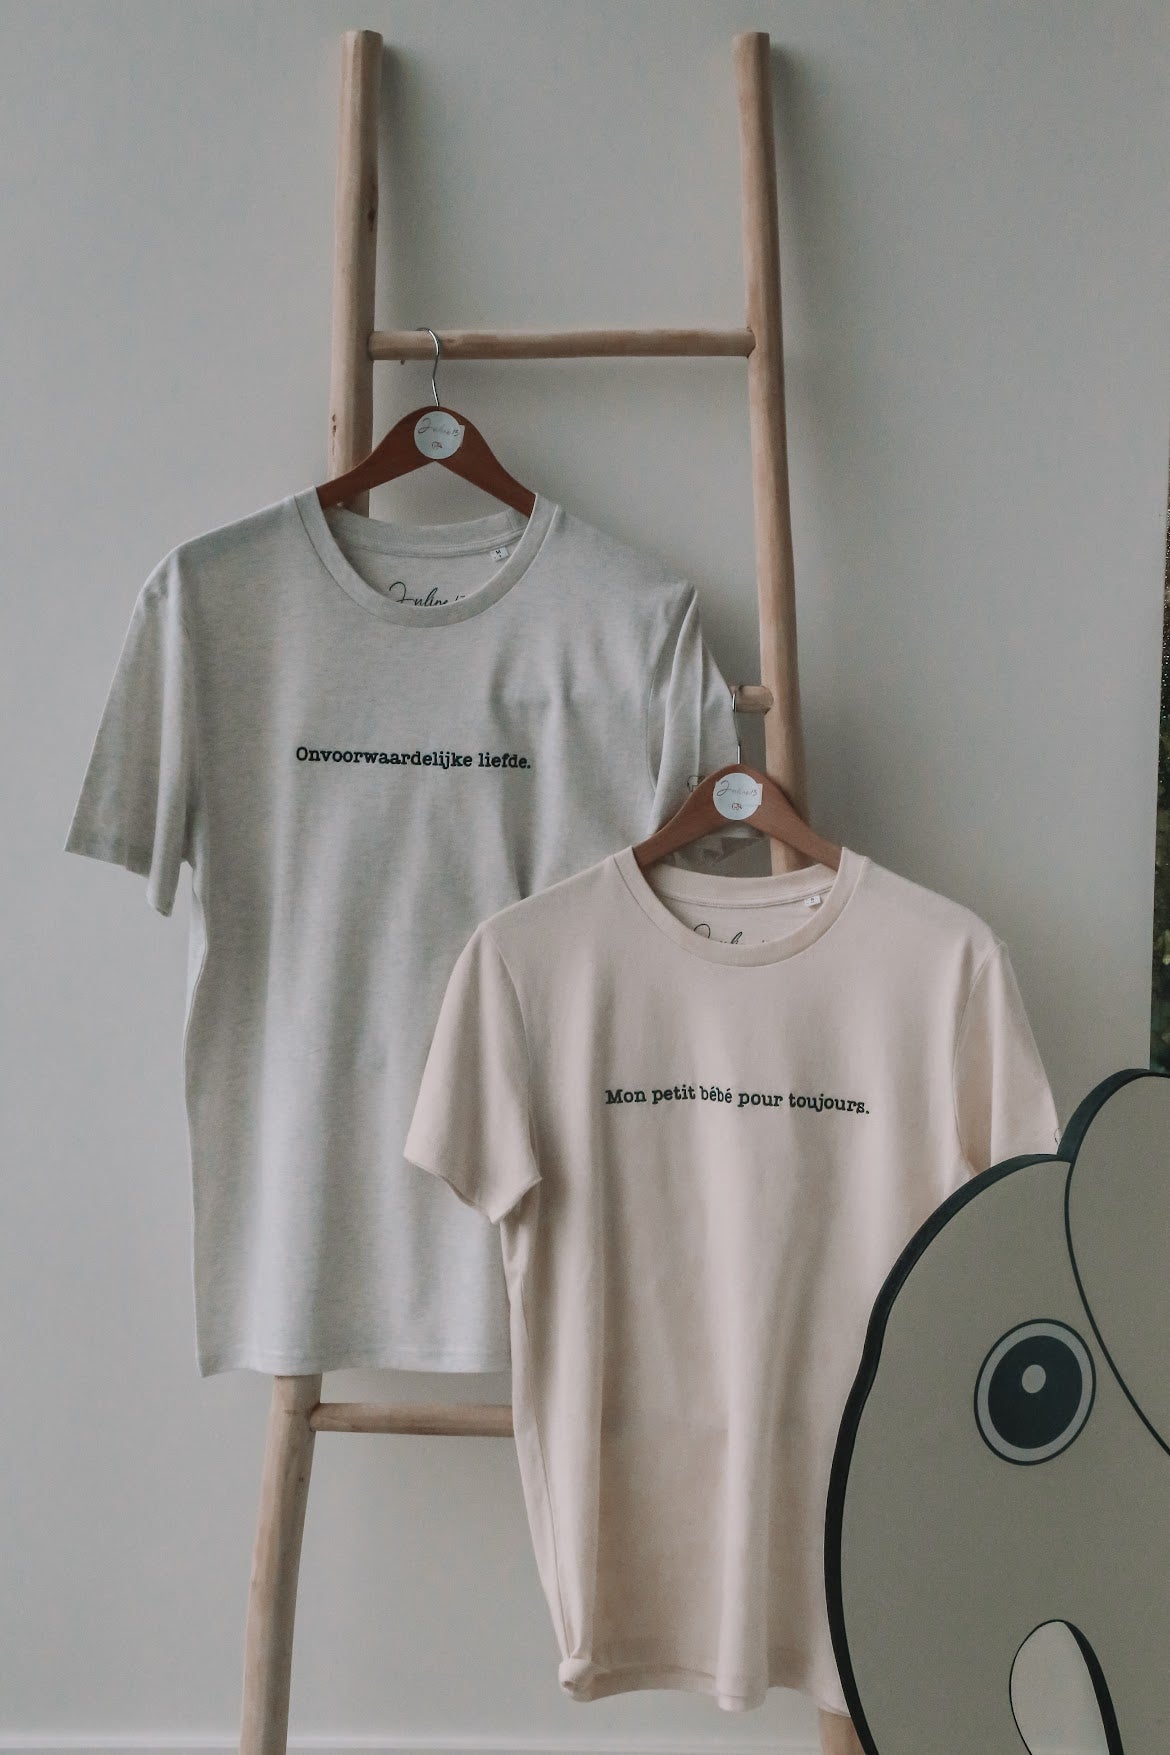 T-shirt 'Onvoorwaardelijke liefde'